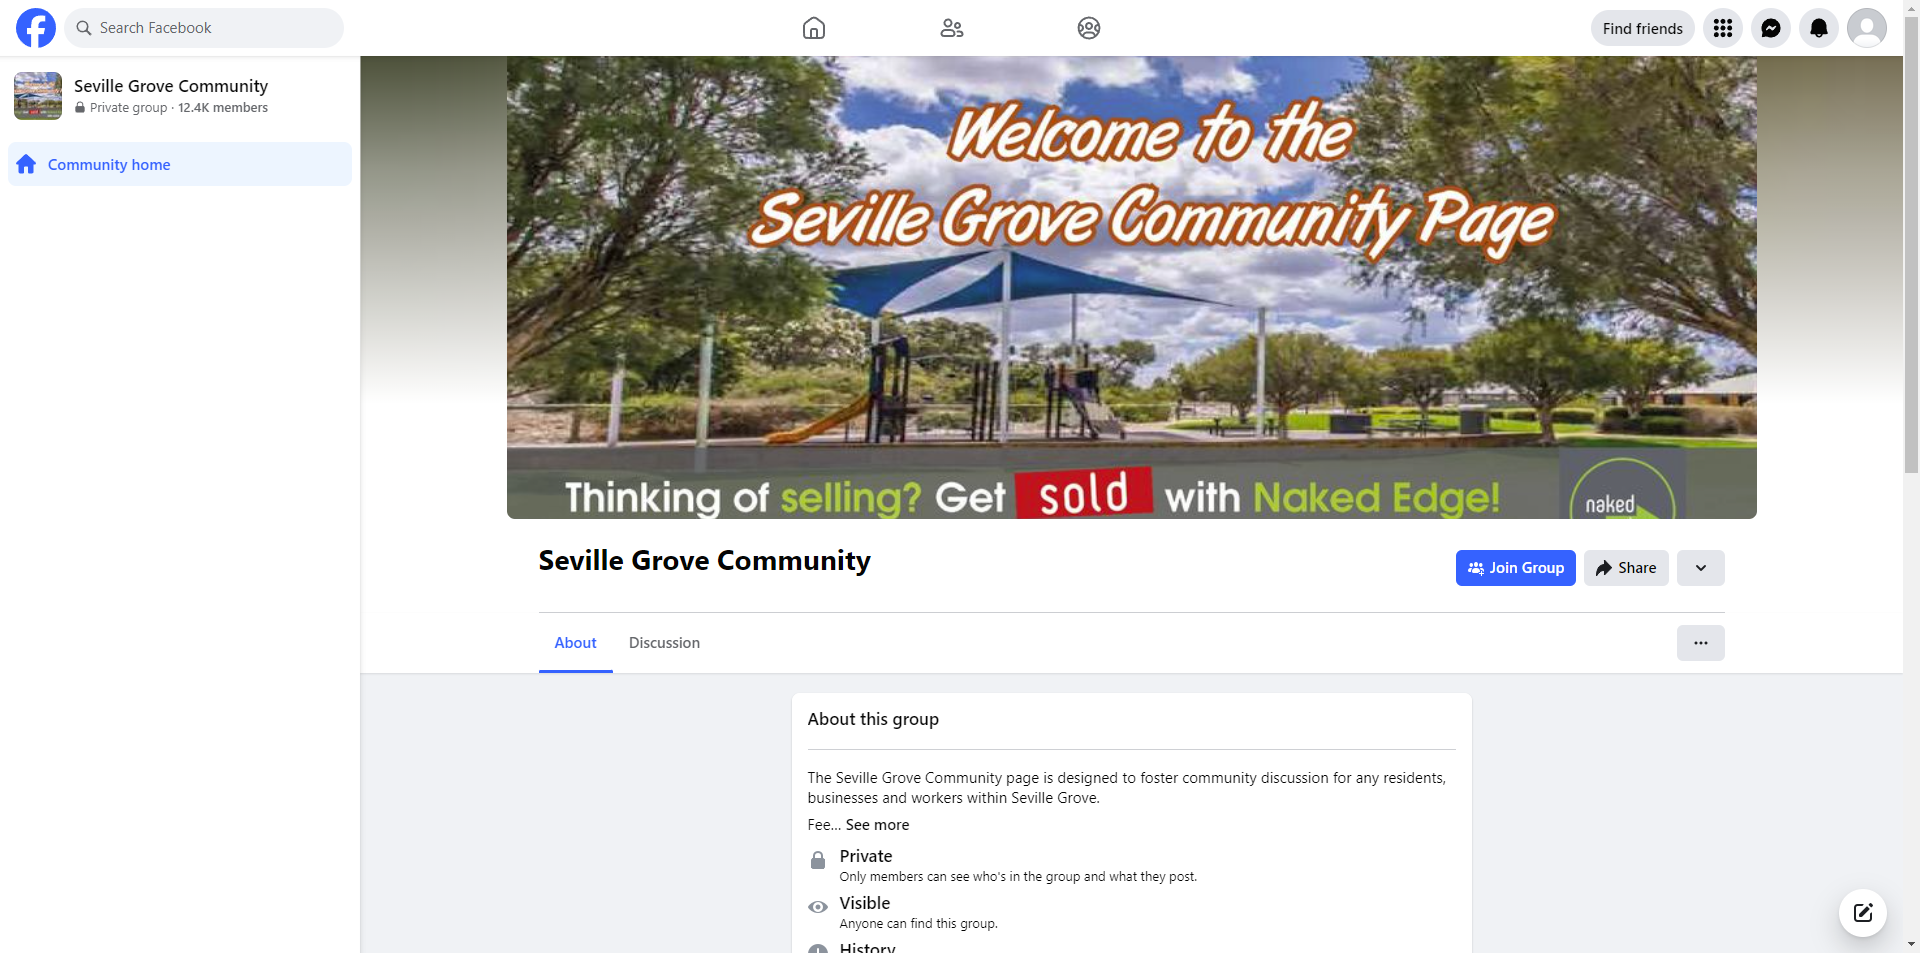 Seville Grove Community